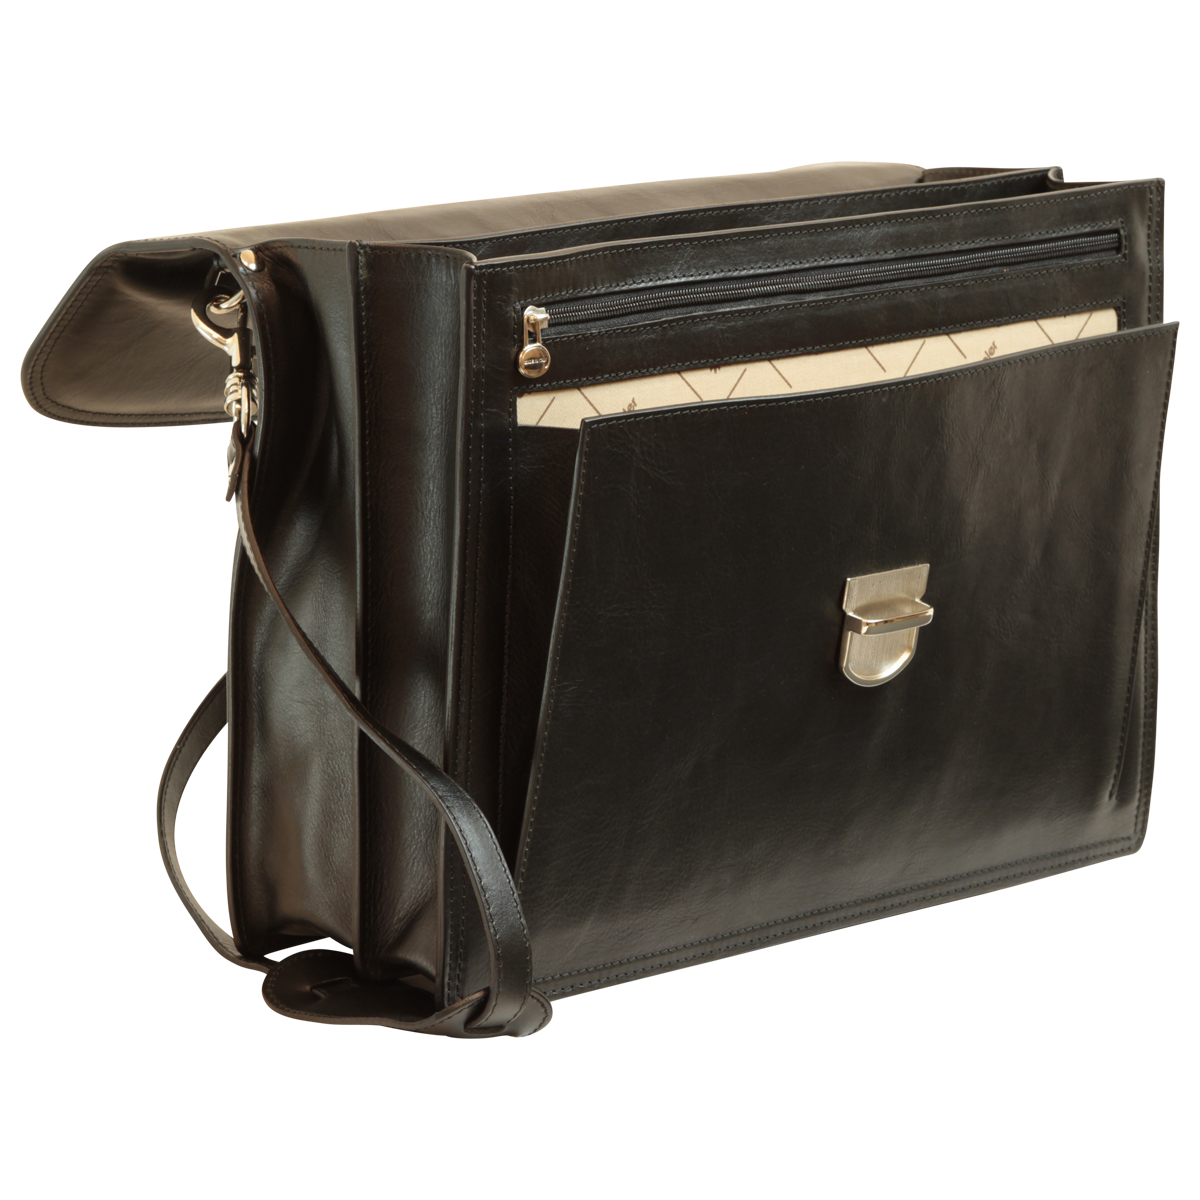 Briefcase with leather shoulder strap - Black | 201689NE UK | Old Angler Firenze